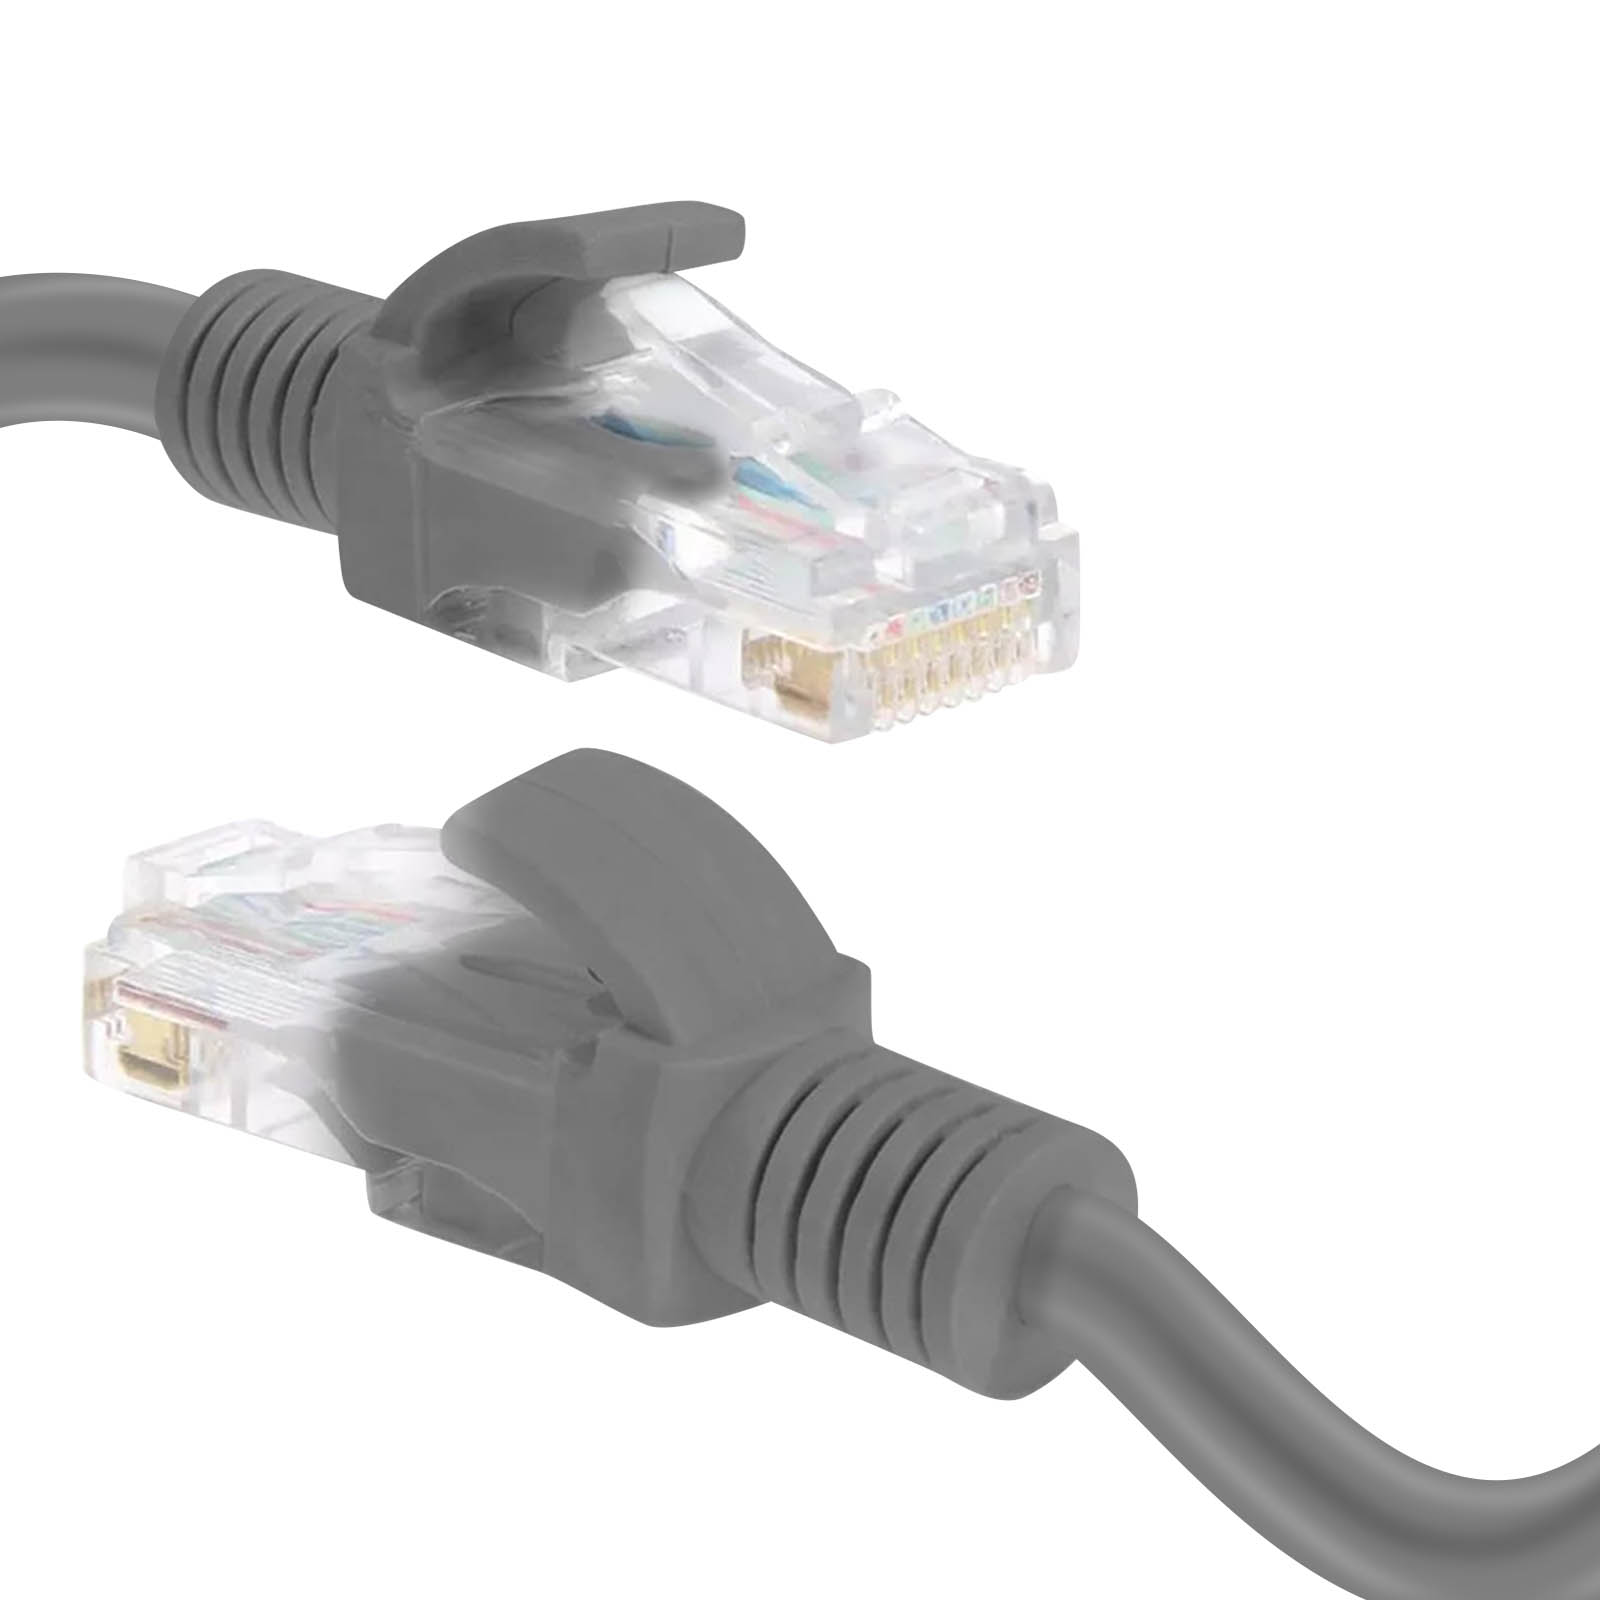 LINQ Ethernet, Ethernet CAT6, 15m, m 15 Kabel, RJ45